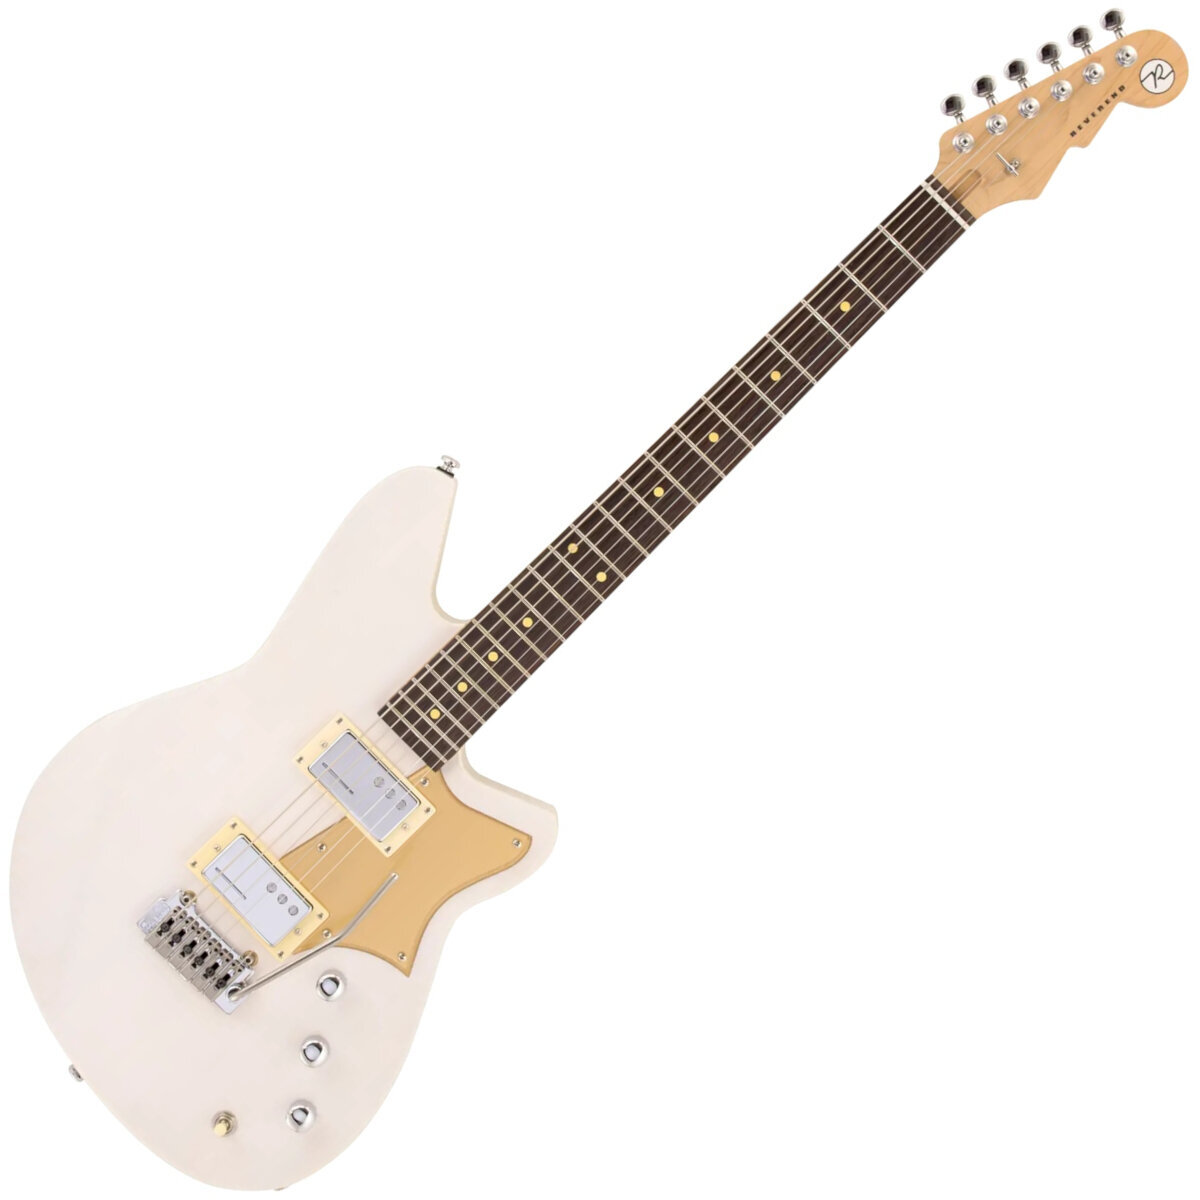 Gitara elektryczna Reverend Guitars Descent W Transparent White